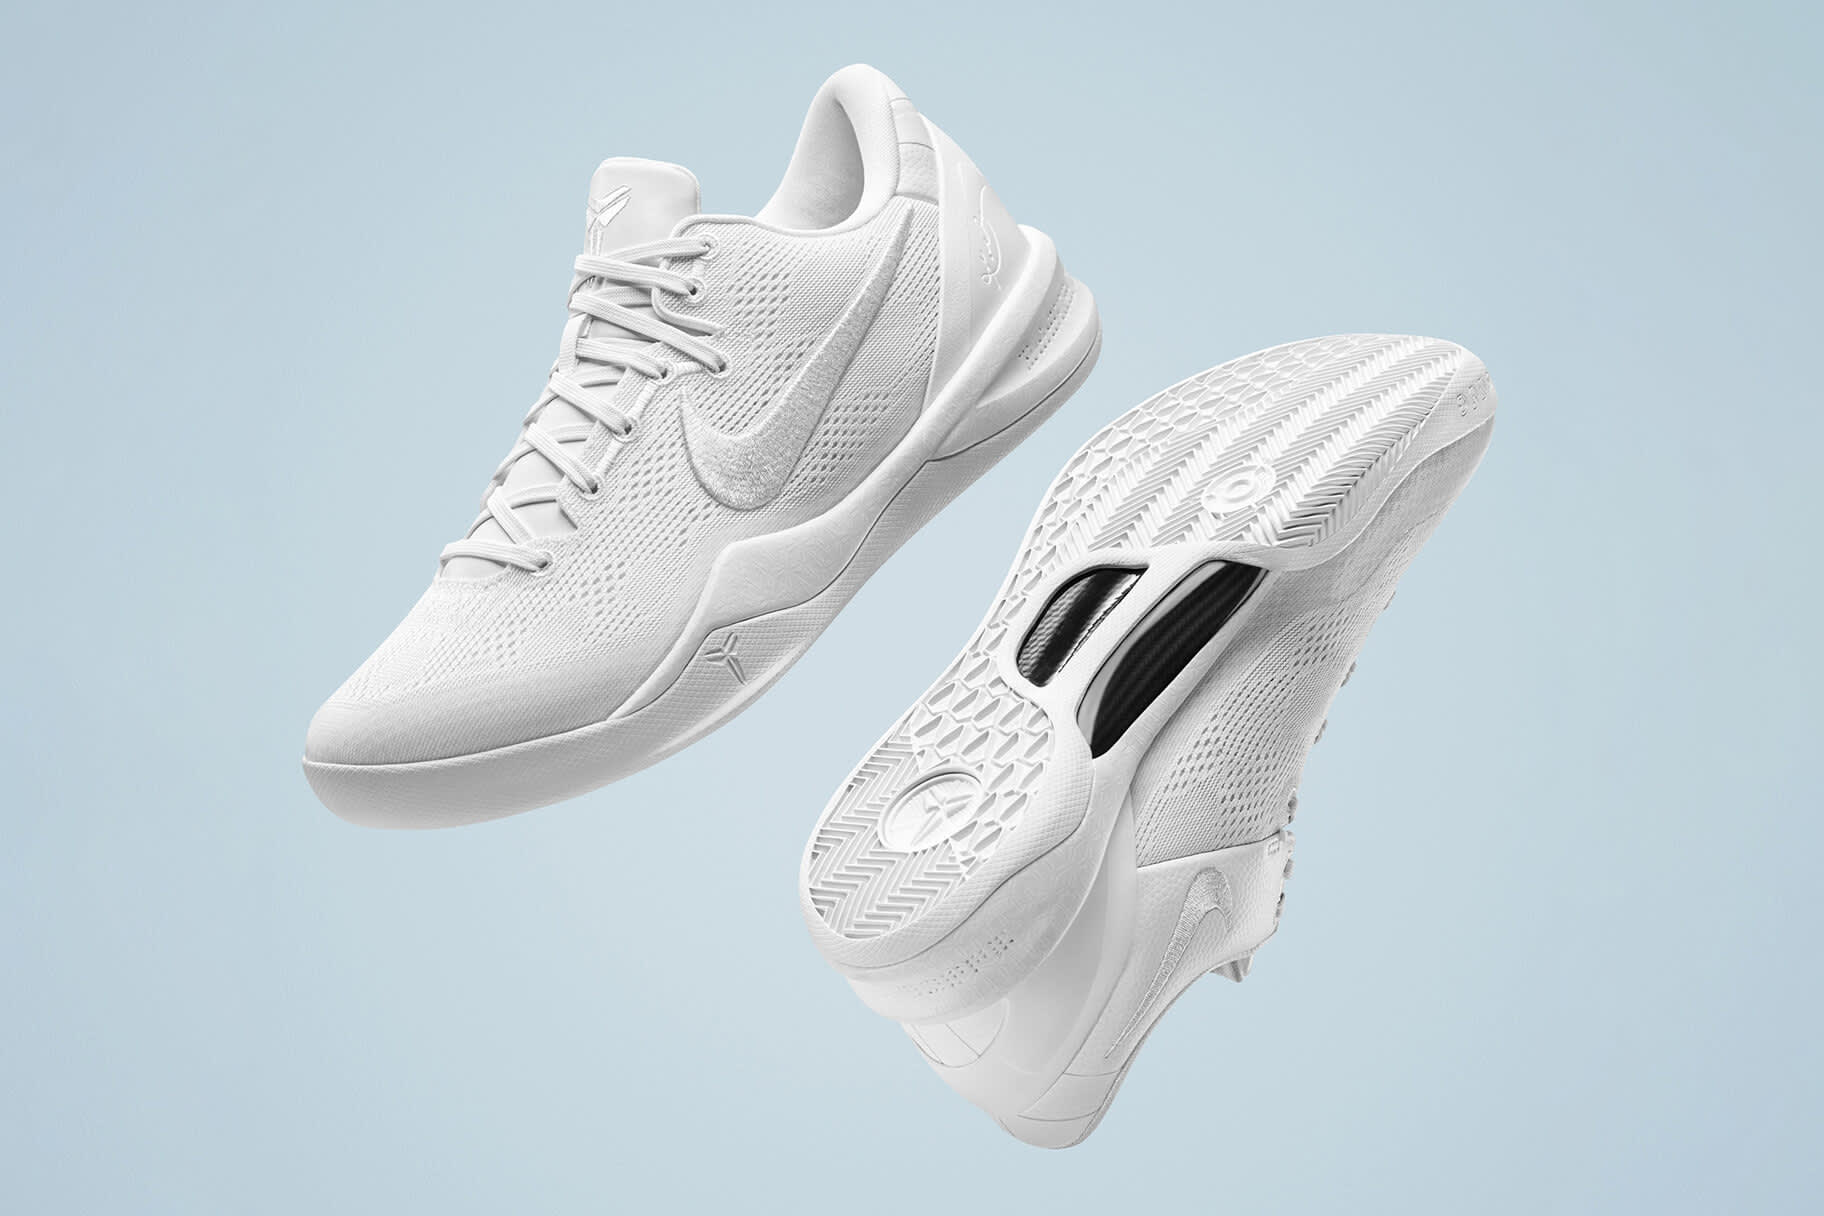 Nike llança les Kobe 8 en commemoració de la superestrella del bàsquet